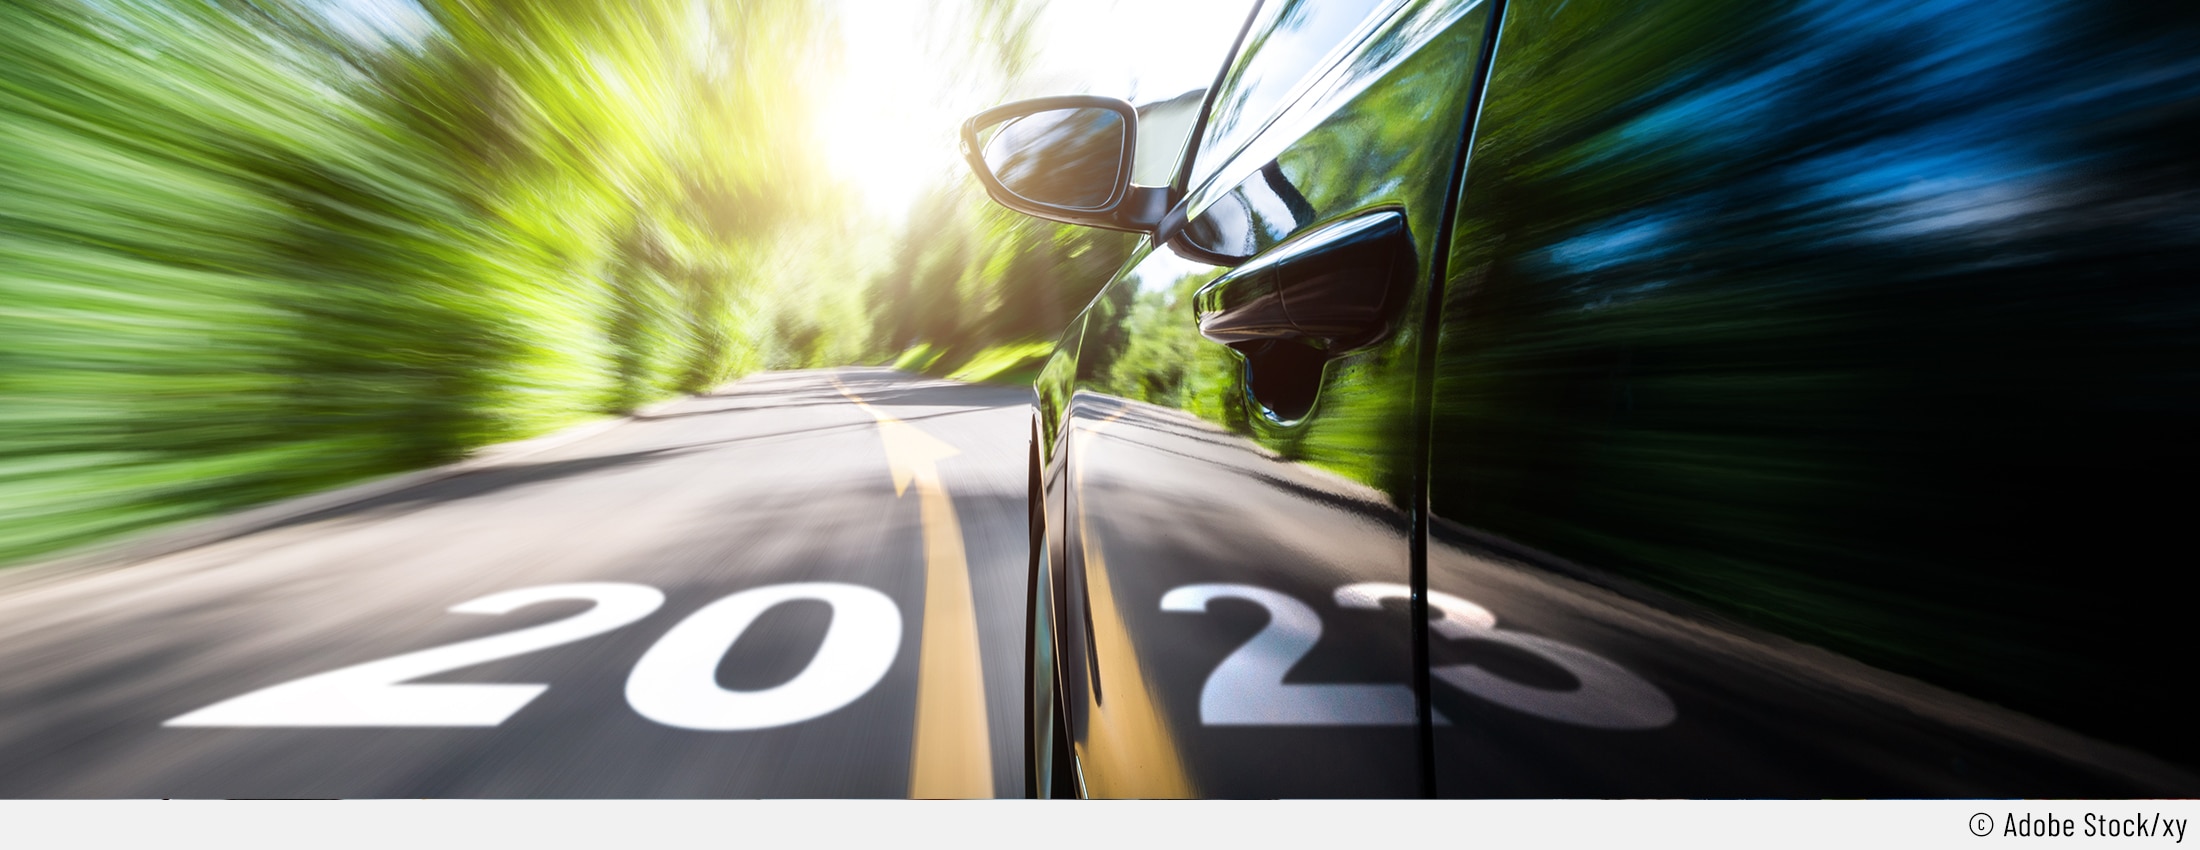 Auf dem Bild ist ein schnell fahrendes Auto aus einer tiefen Perspektive zu sehen. Der Hintergrund ist zum Darstellen der Geschwindigkeit verzerrt. Auf der Straße ist eine Markierung mit "20" und die Spiegelung im Auto ergänzt das neue Jahr mit "23".